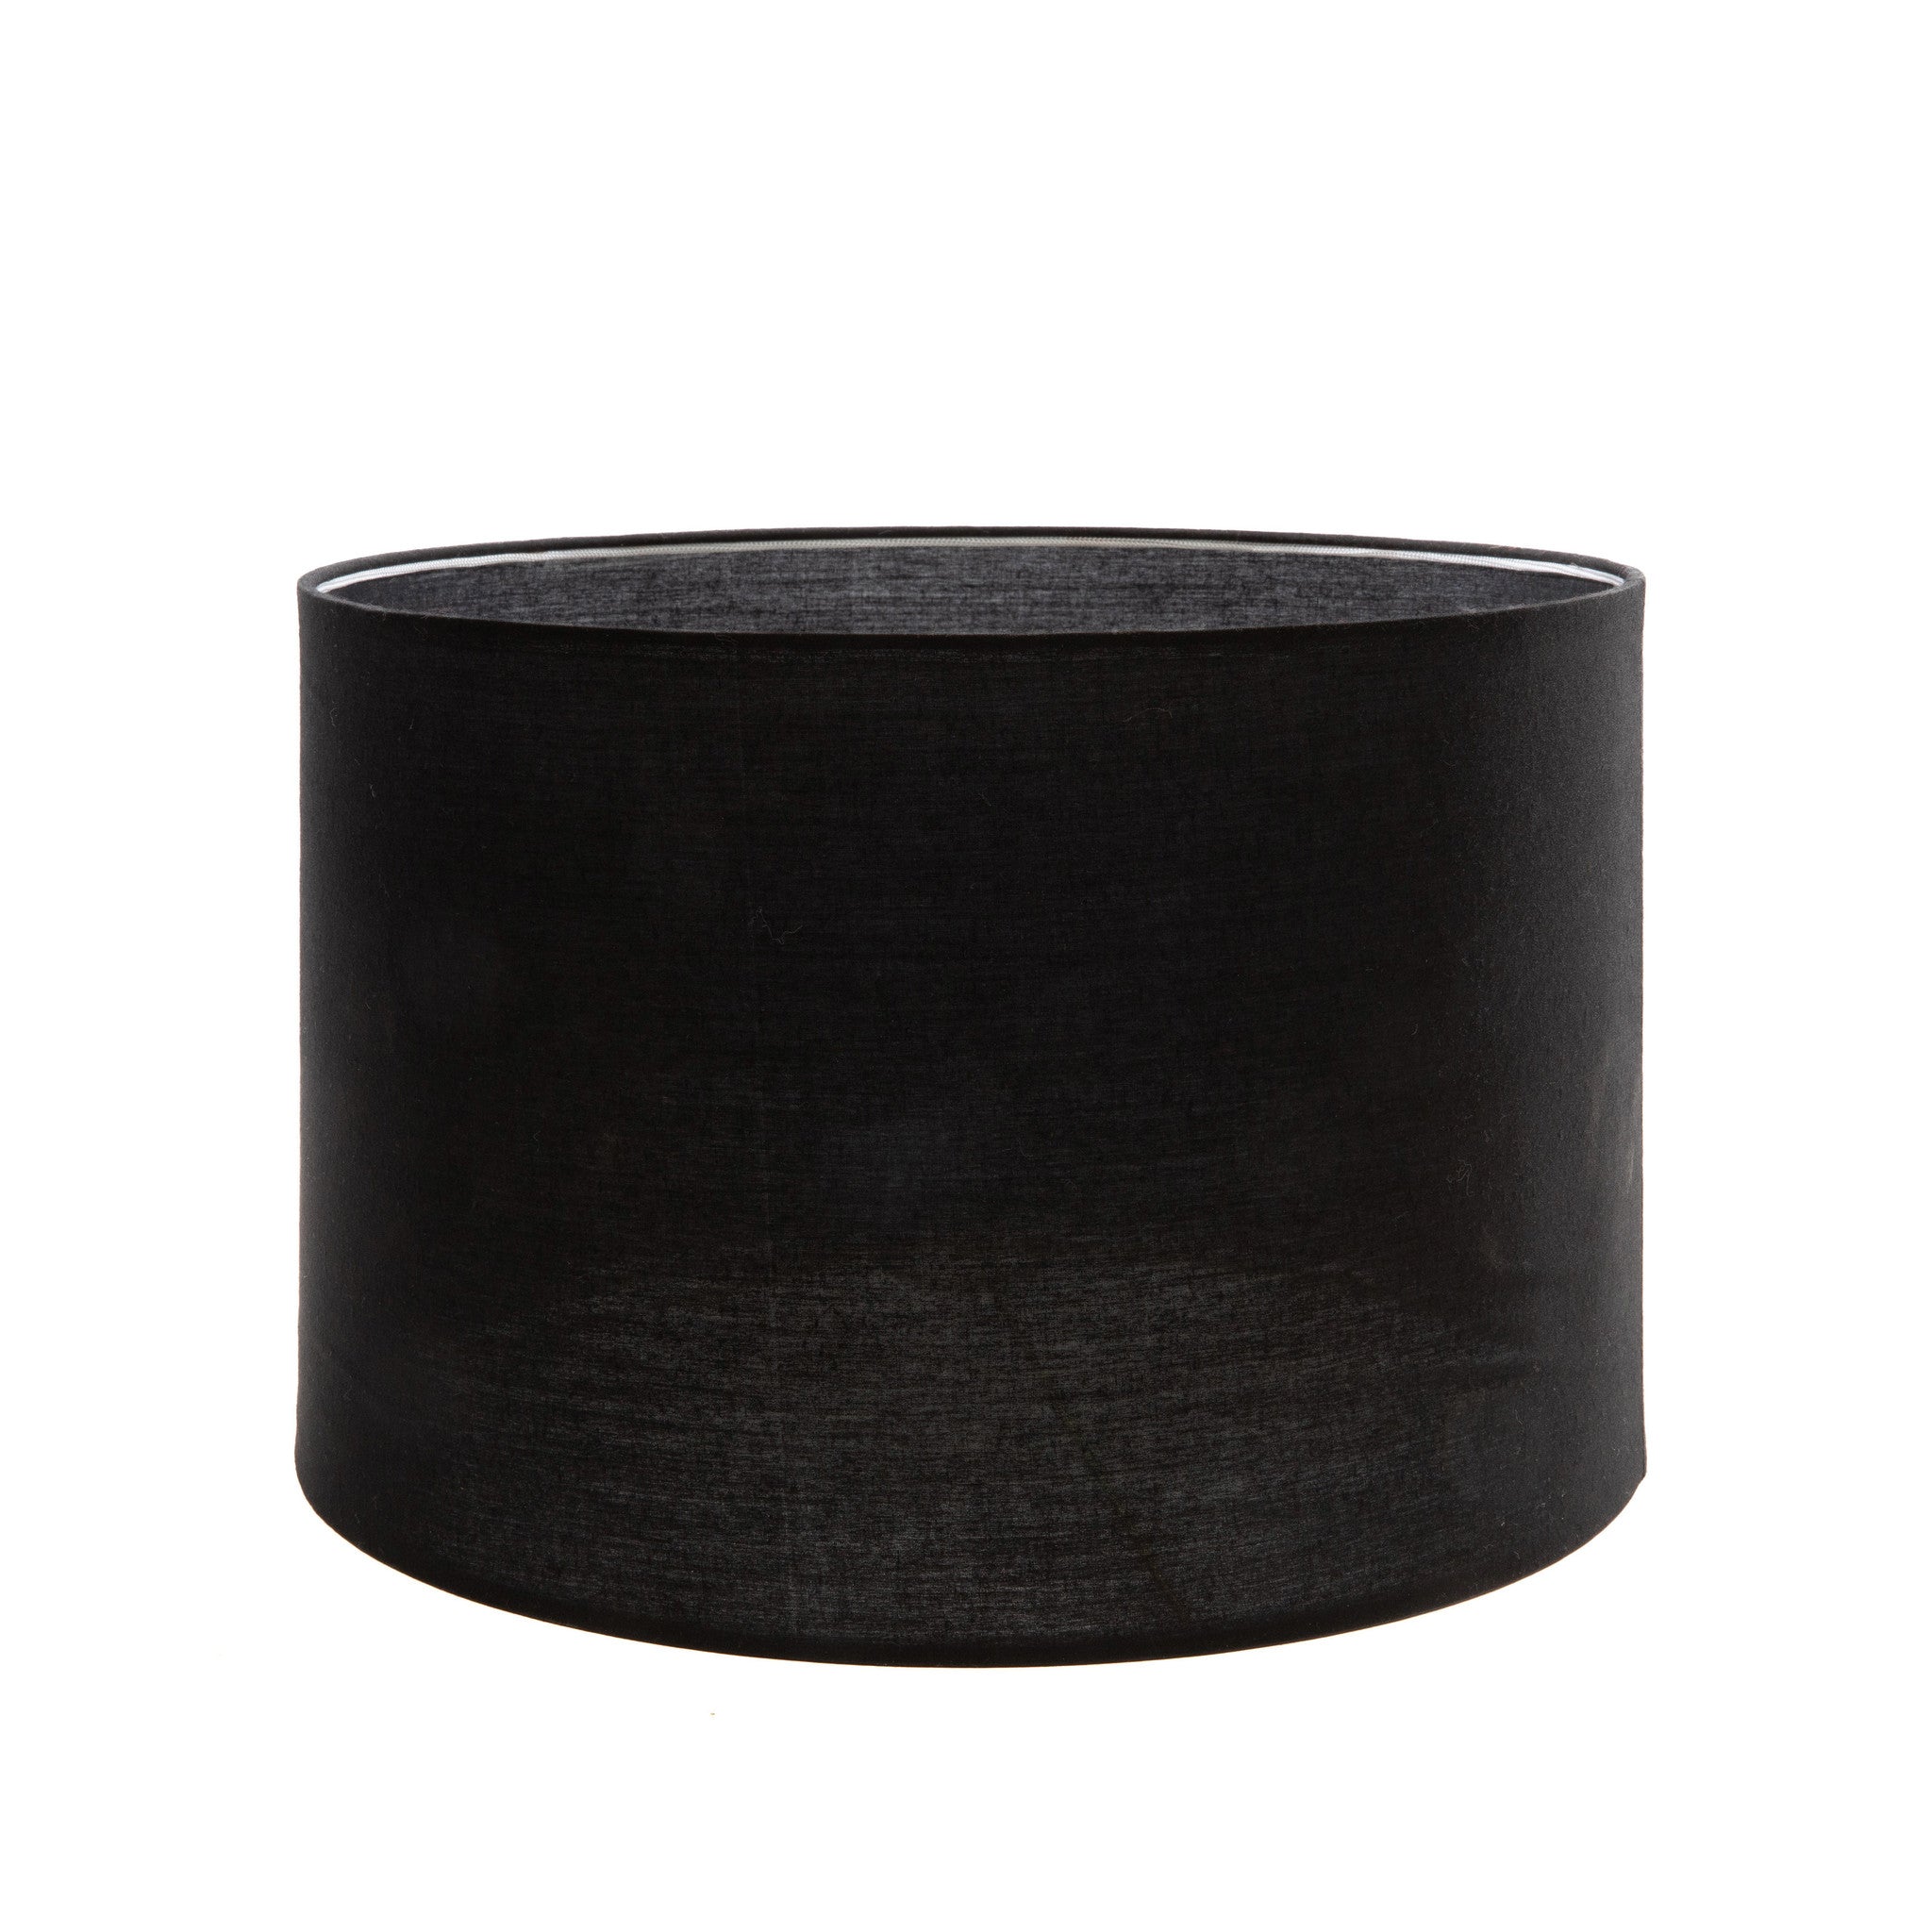 La lámpara de mesa en madera de teca - Negro natural